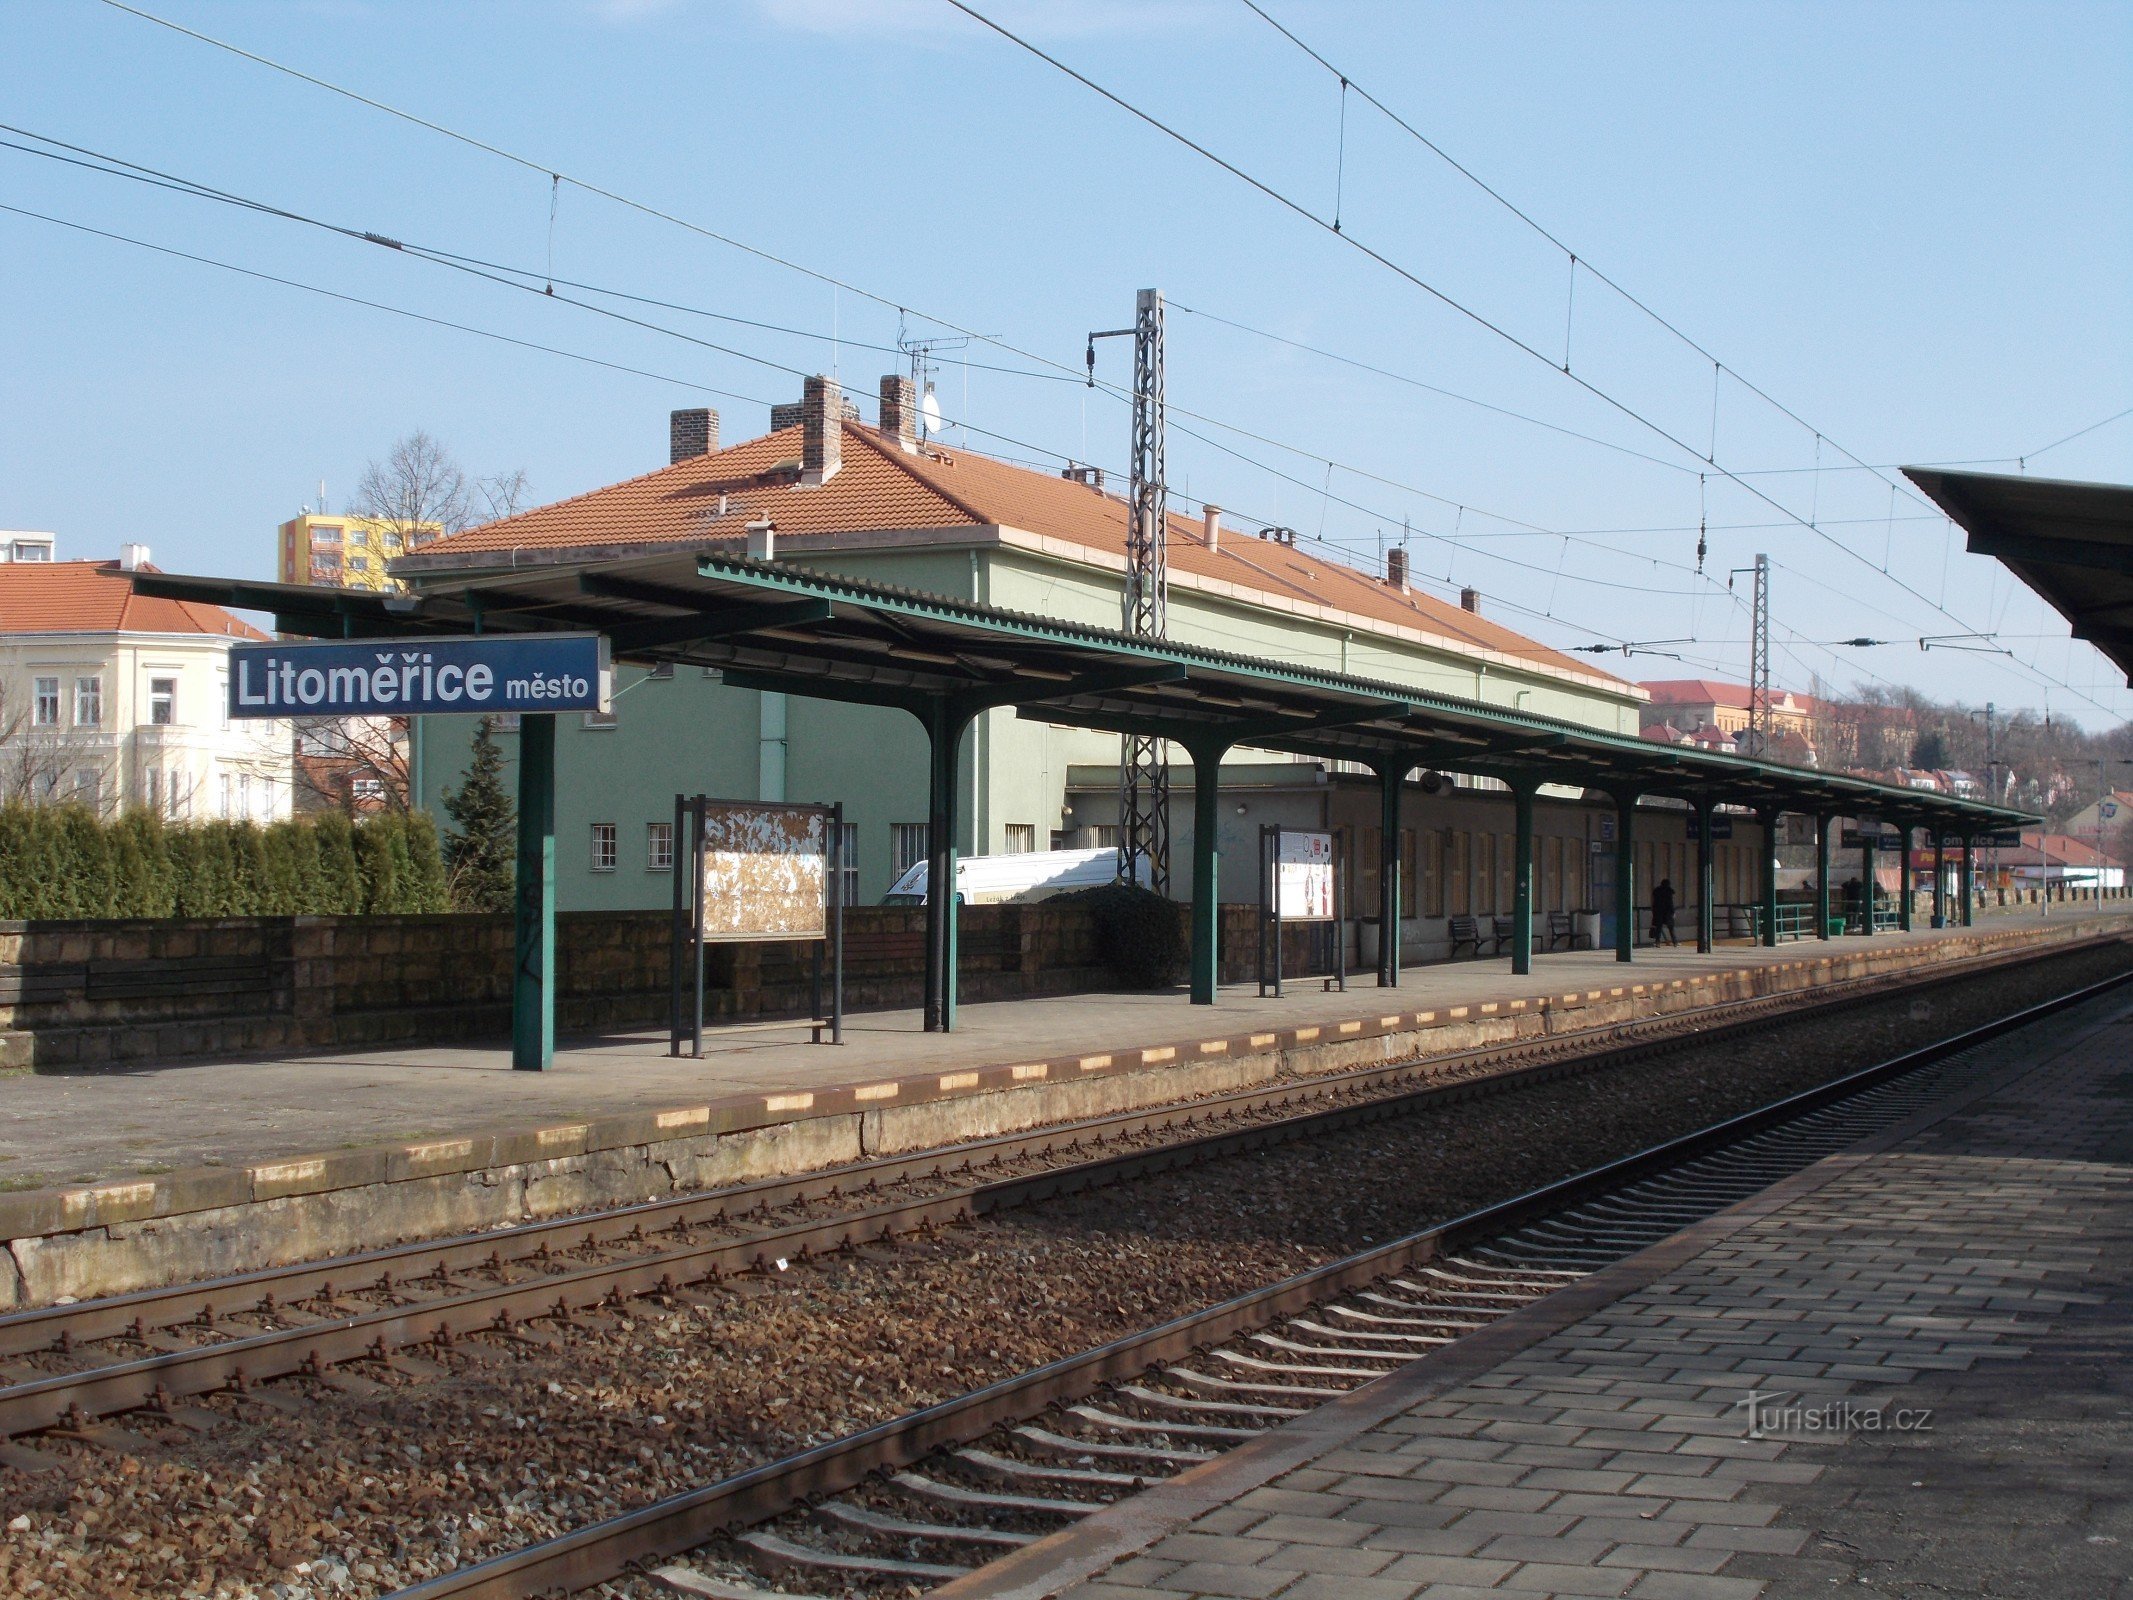 Orașul Litoměřice - gară